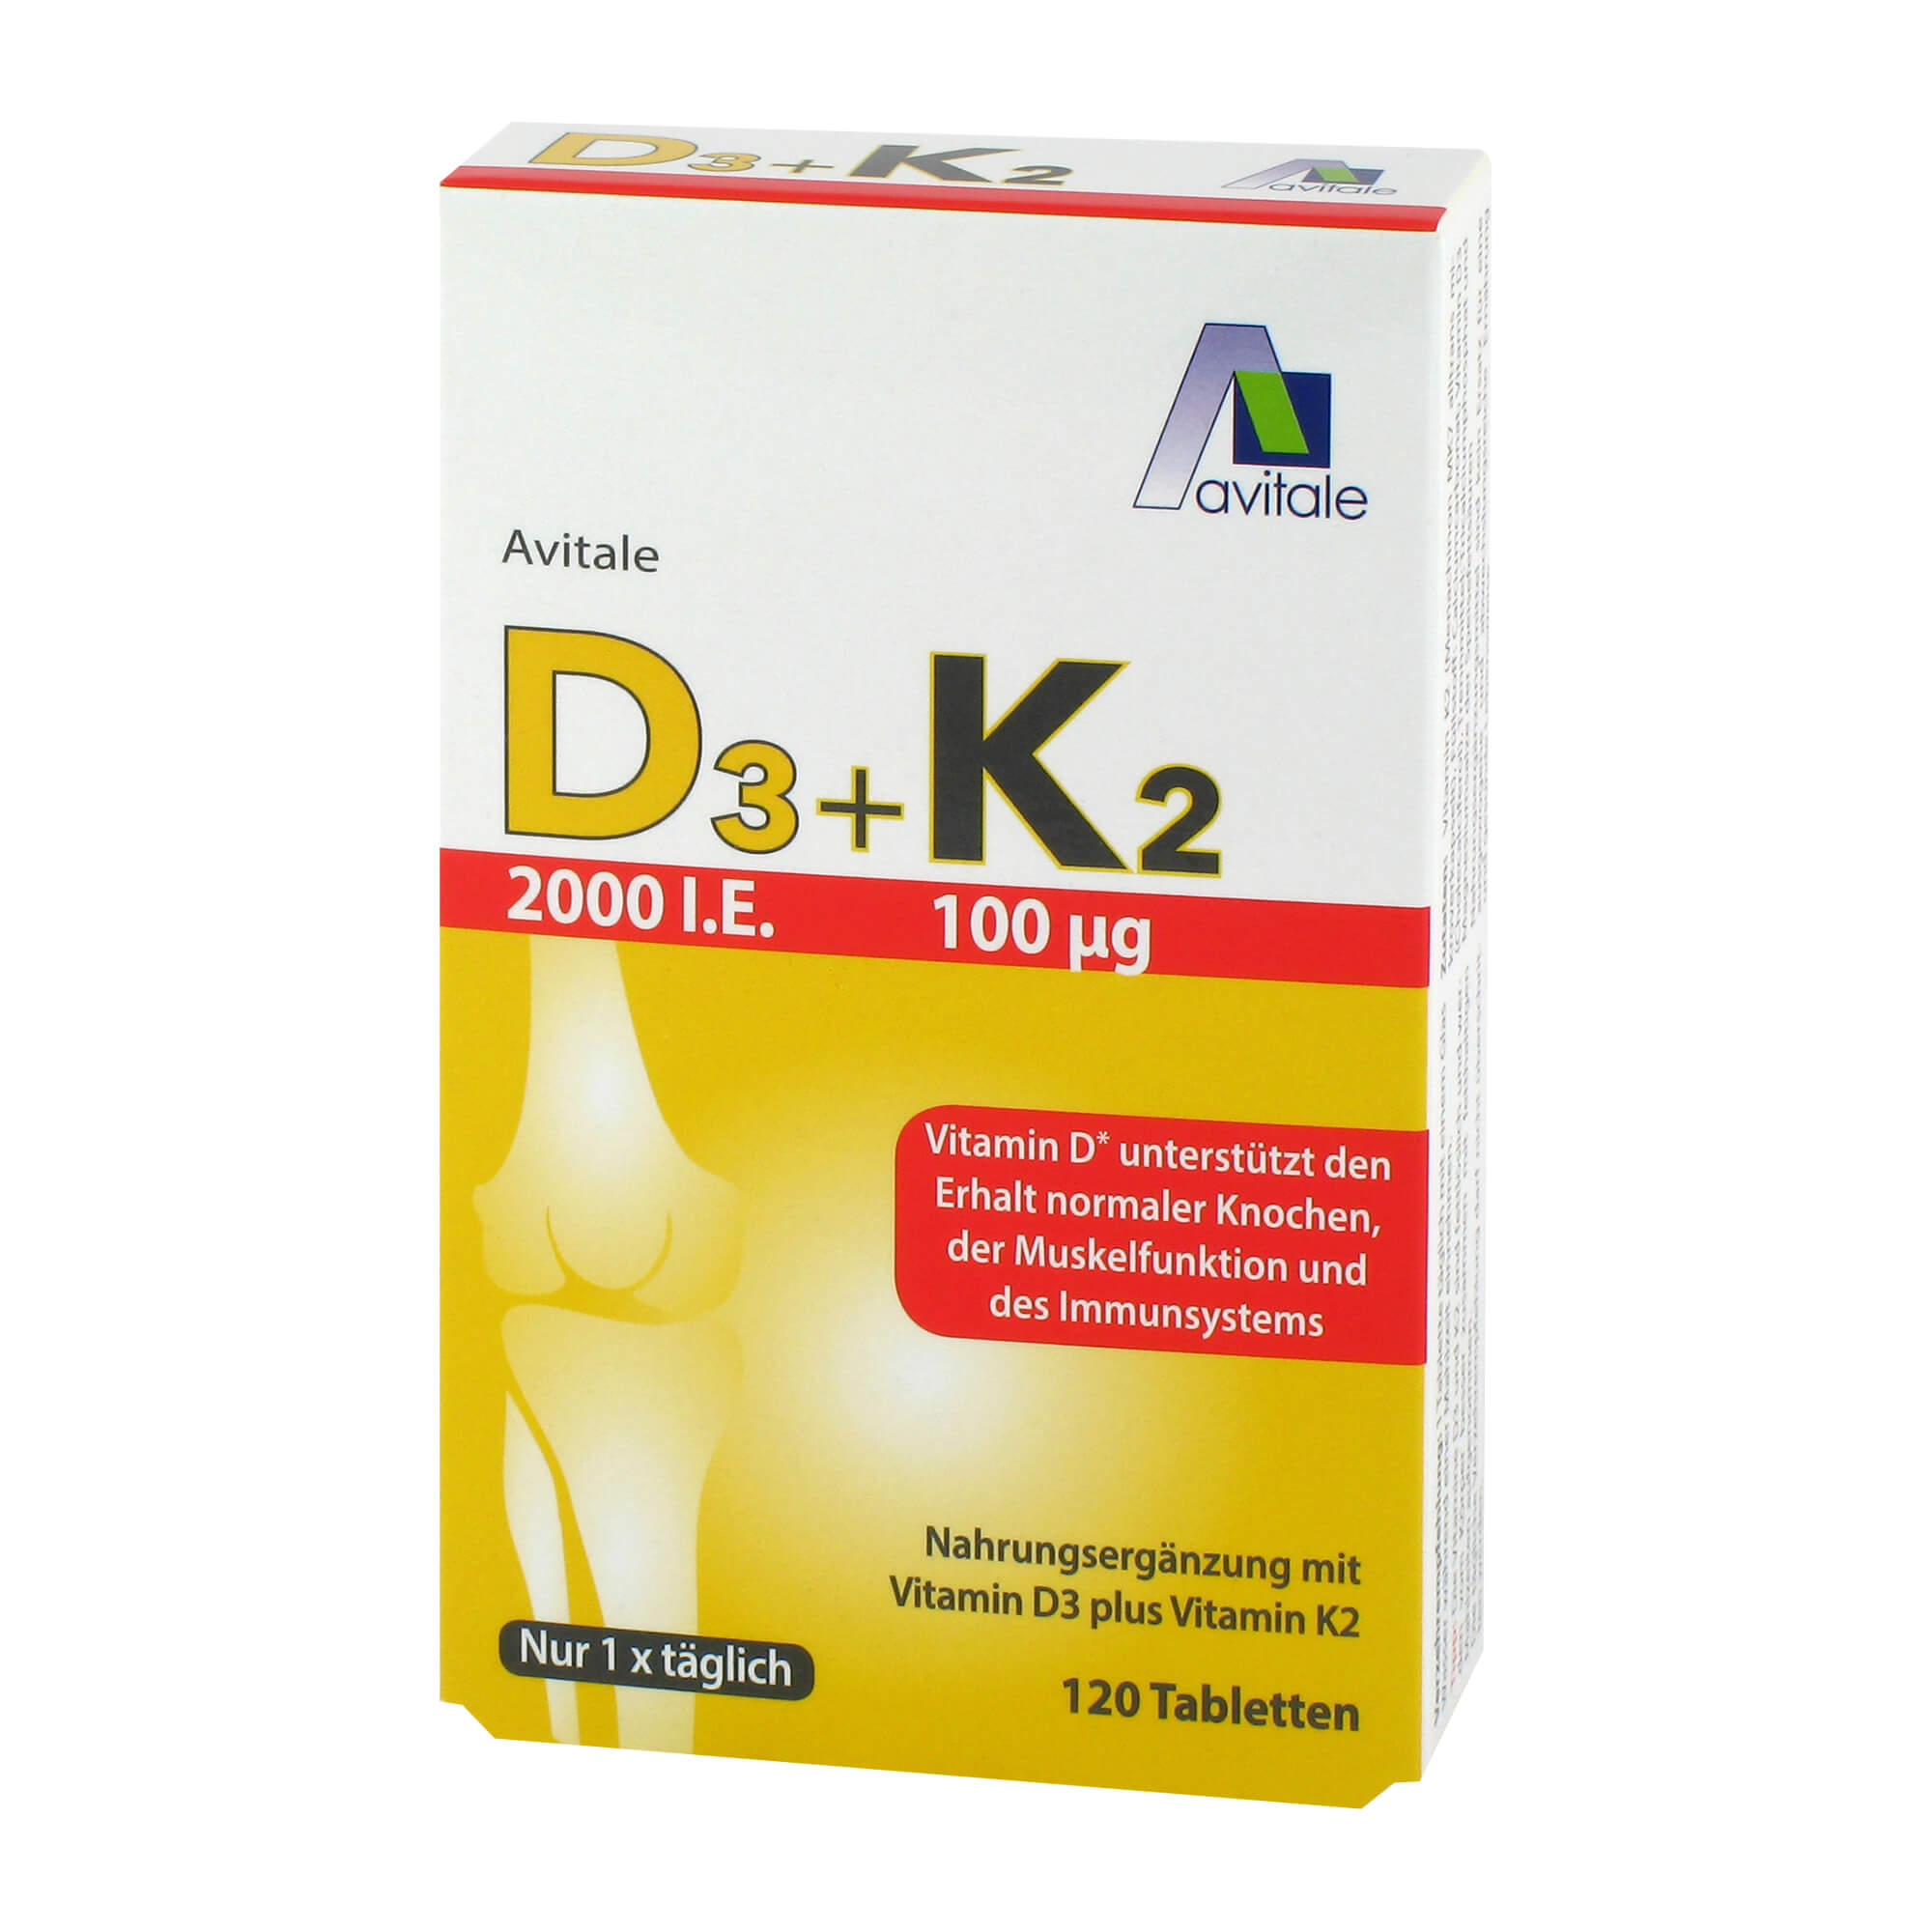 Nahrungsergänzungsmittel mit Vitamin D3 und Vitamin K2.